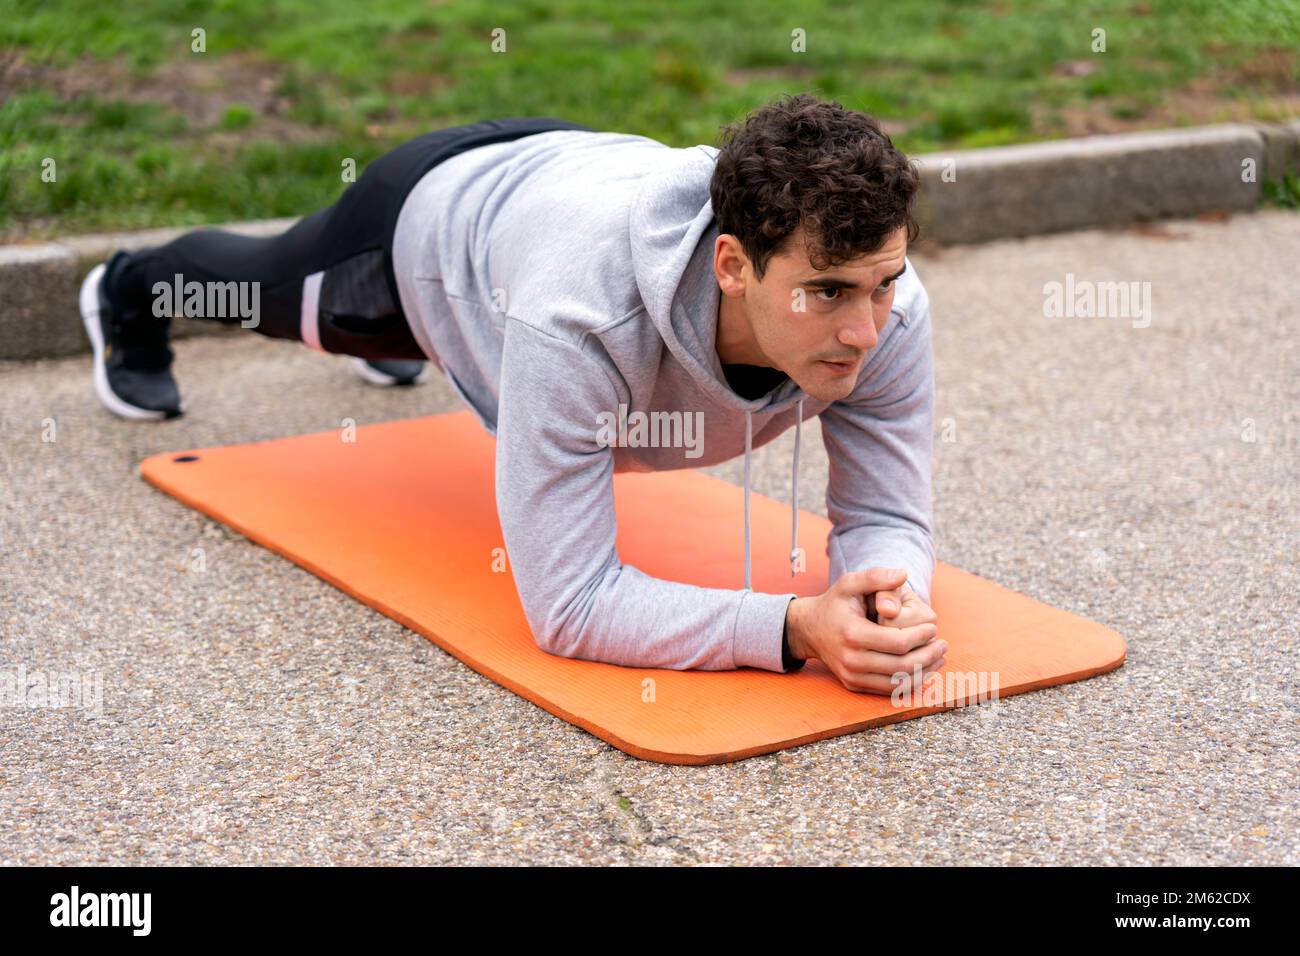 Der ganze Körper eines konzentrierten männlichen Athleten in Aktivbekleidung, der im Park Plank-Training auf einer orangefarbenen Matte macht Stockfoto